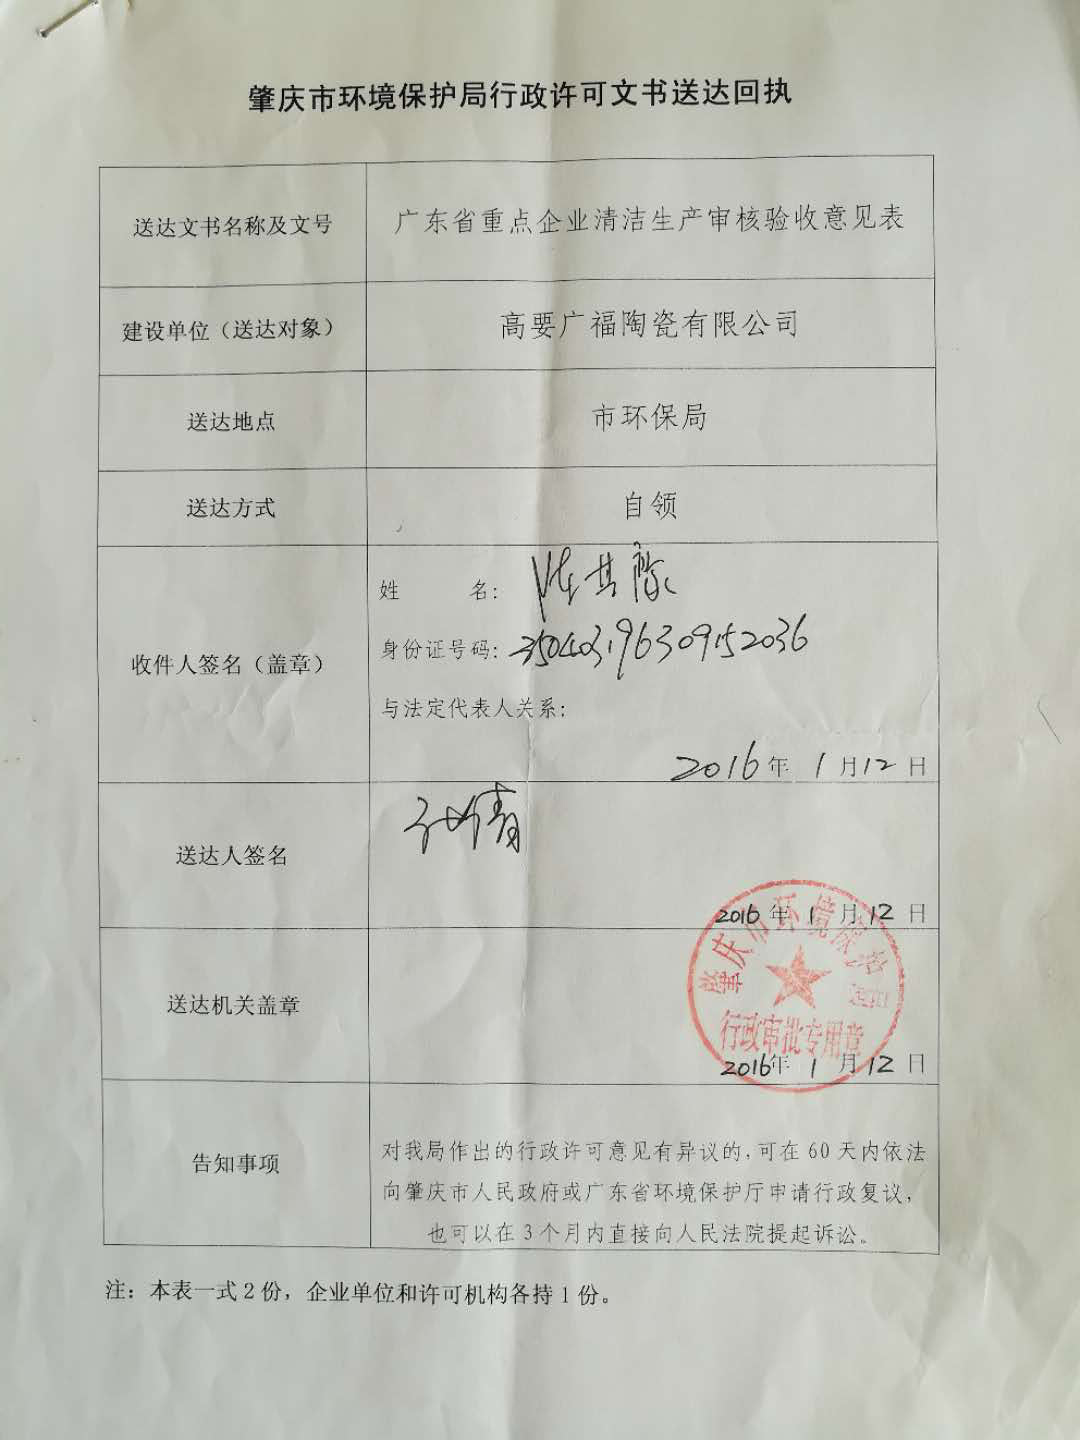 肇慶市壞境保護局行政許可(1)